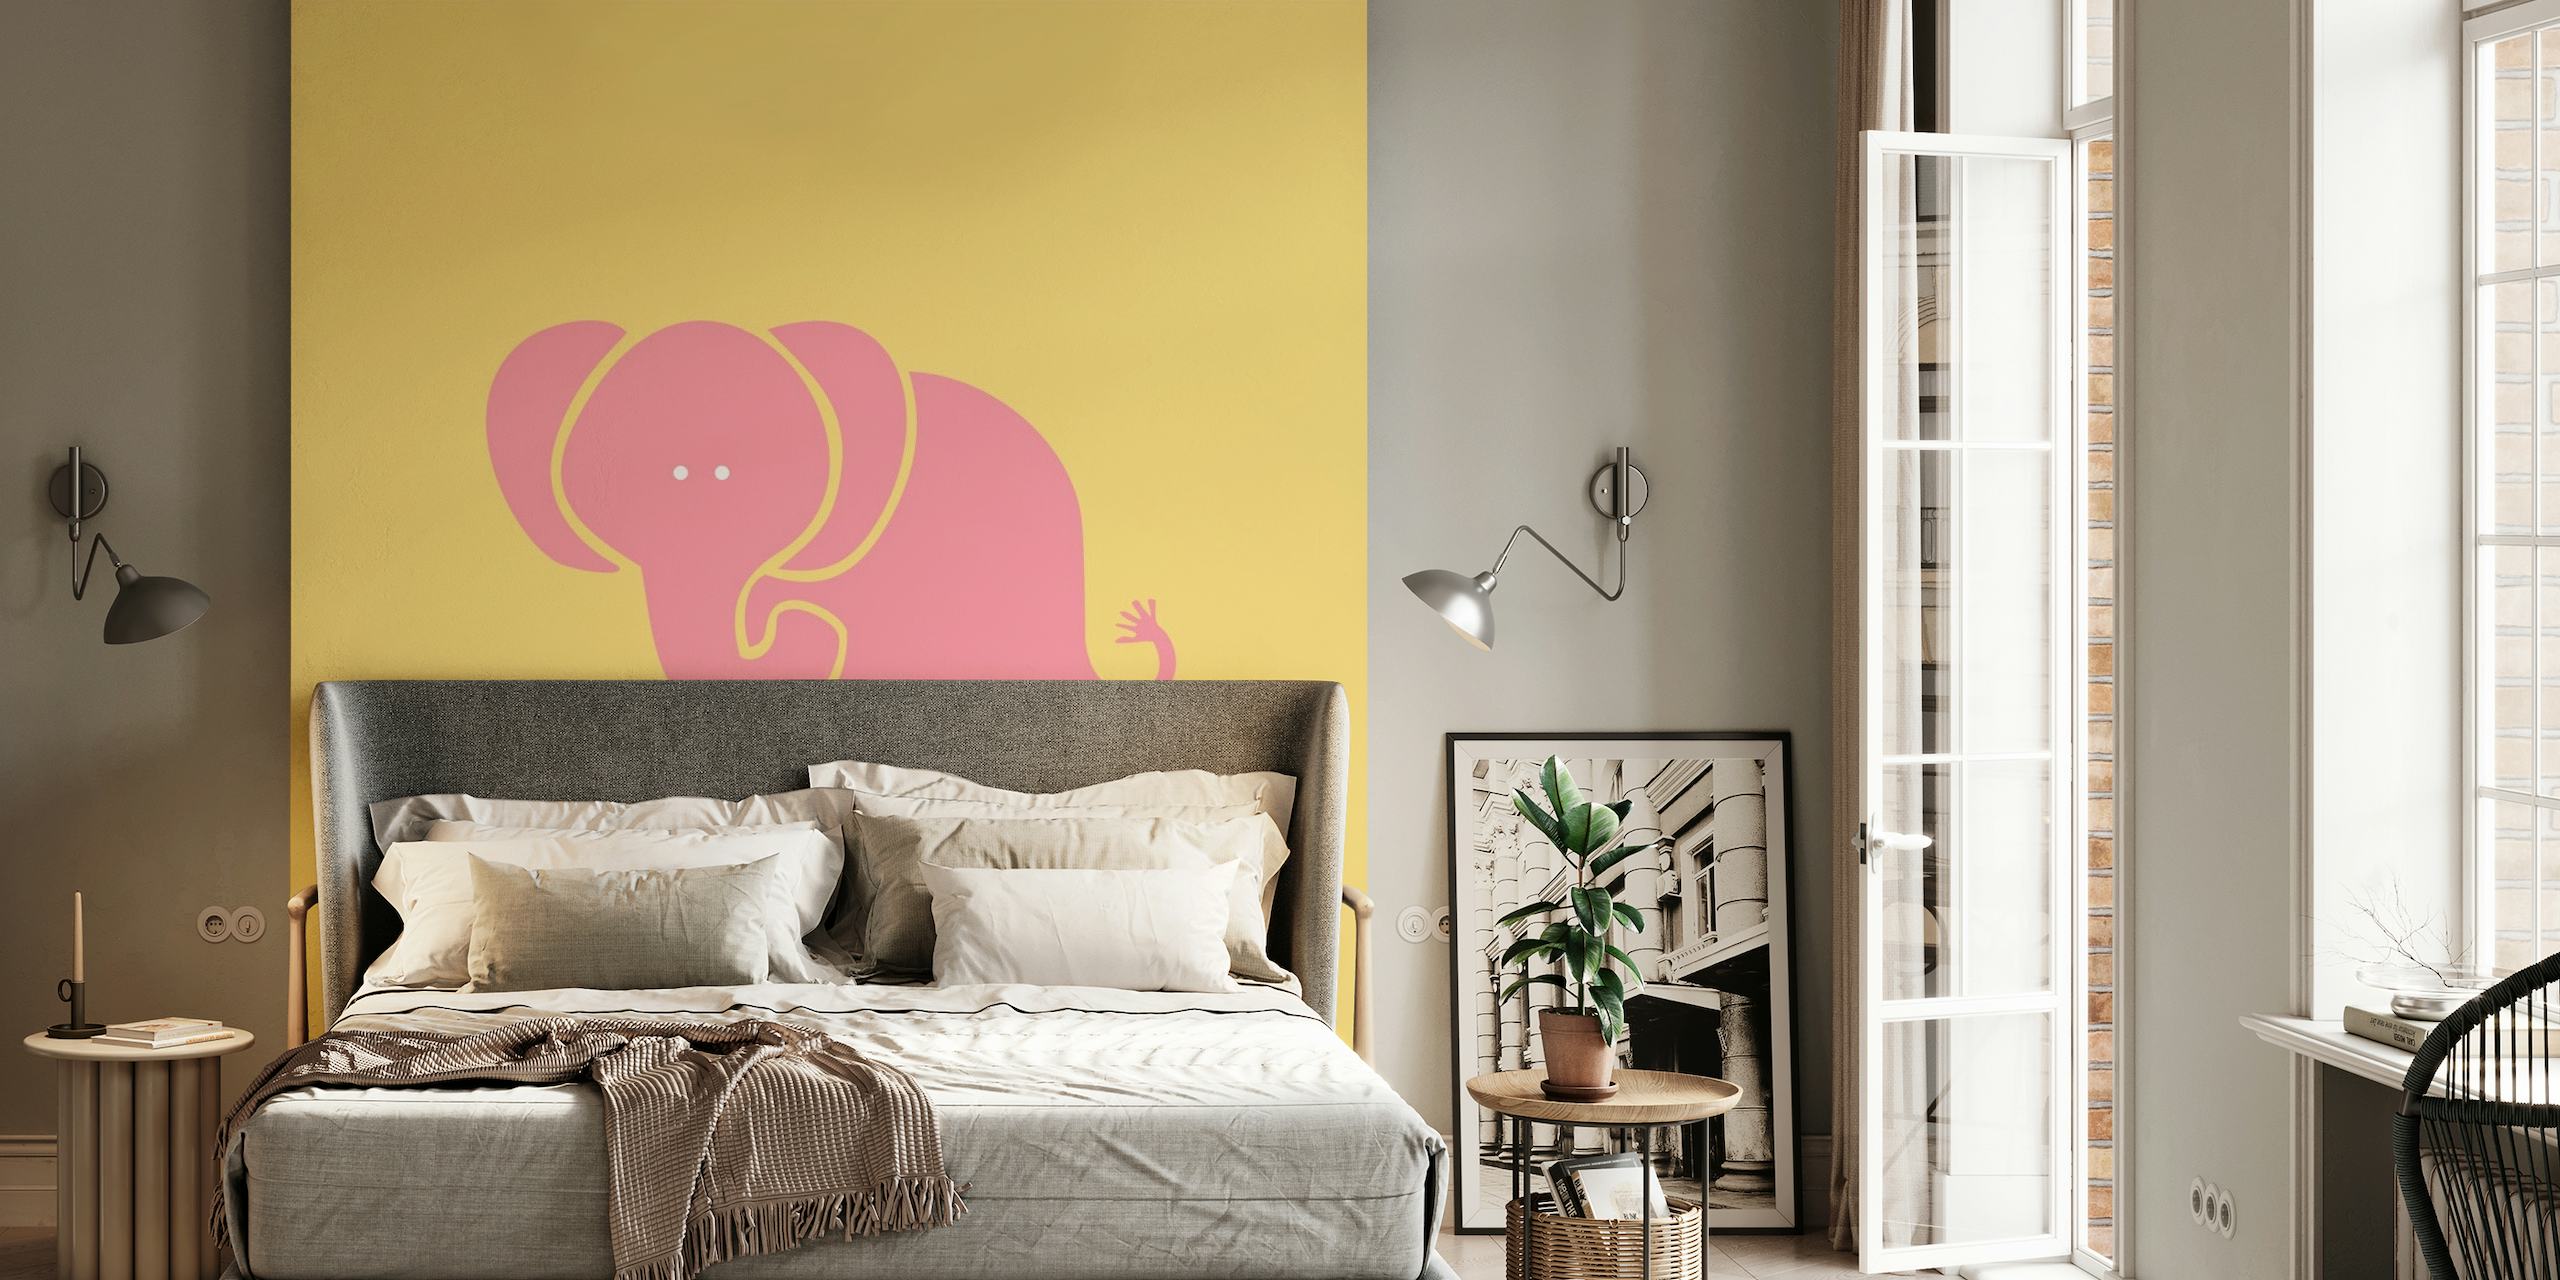 Gestileerde saffraangele olifant op een roze achtergrondmuurschildering